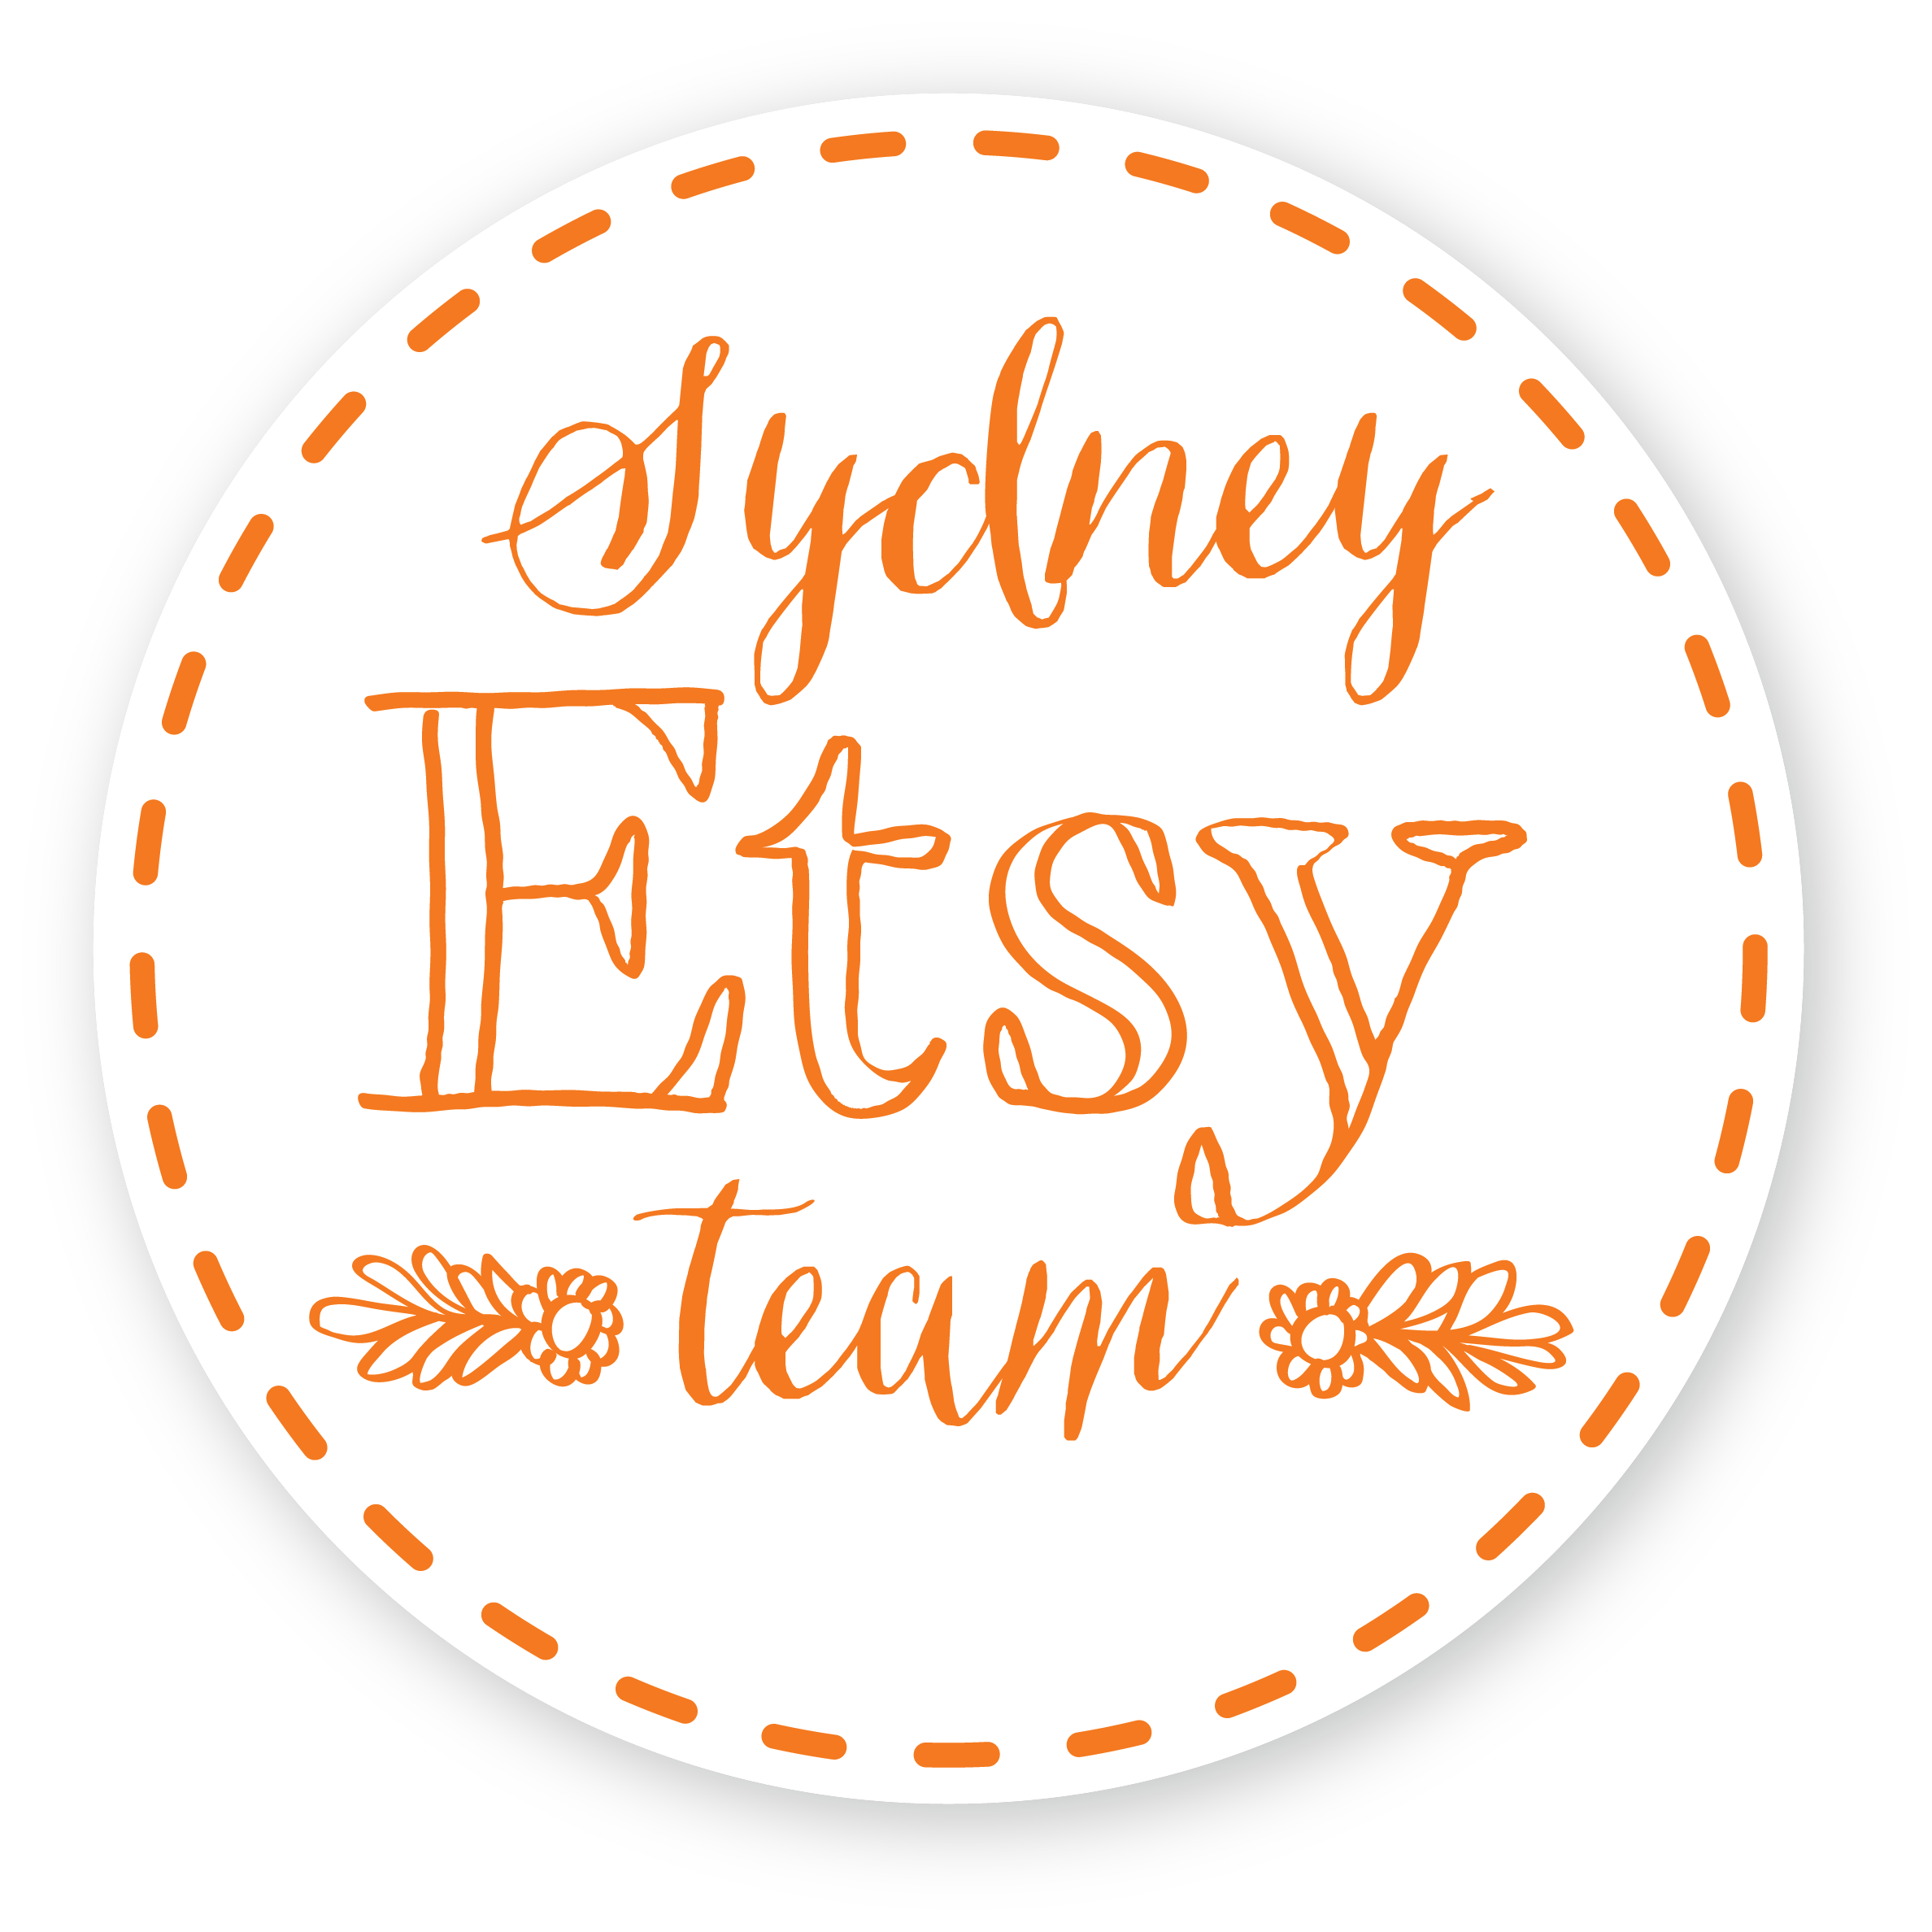 Sydney Etsy Team